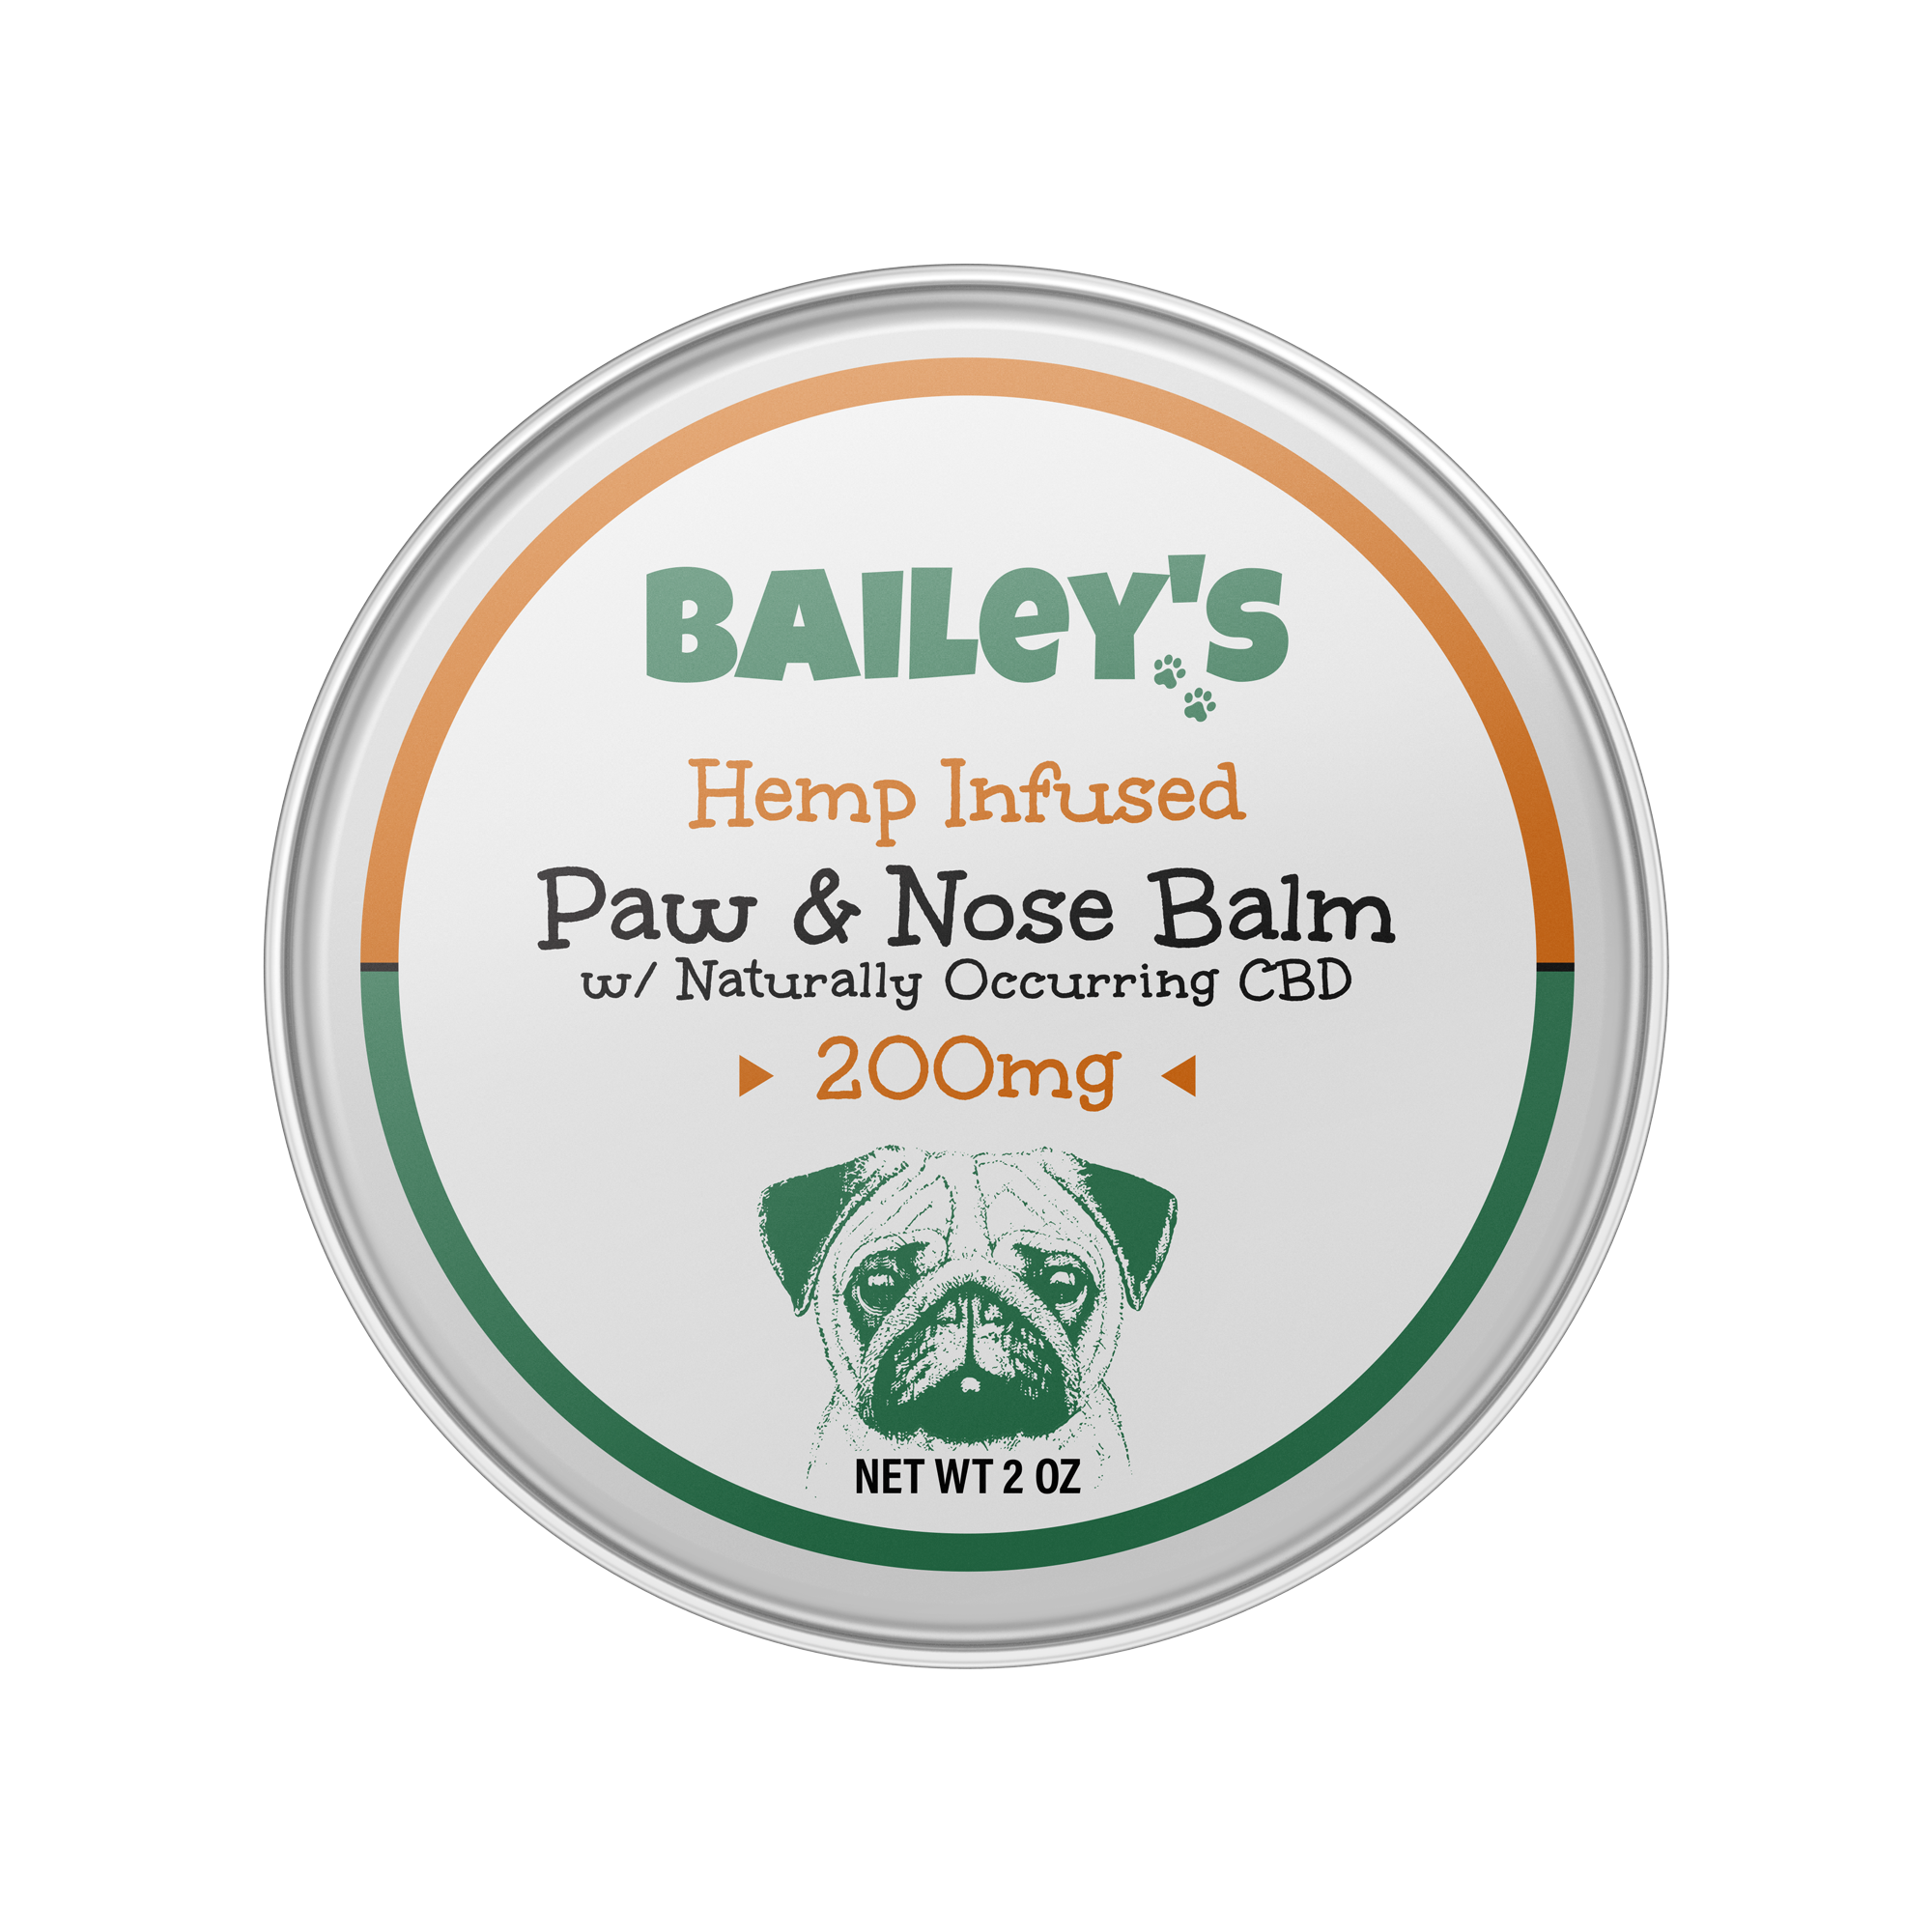 Baileys Paw & Nose Balm 200mg